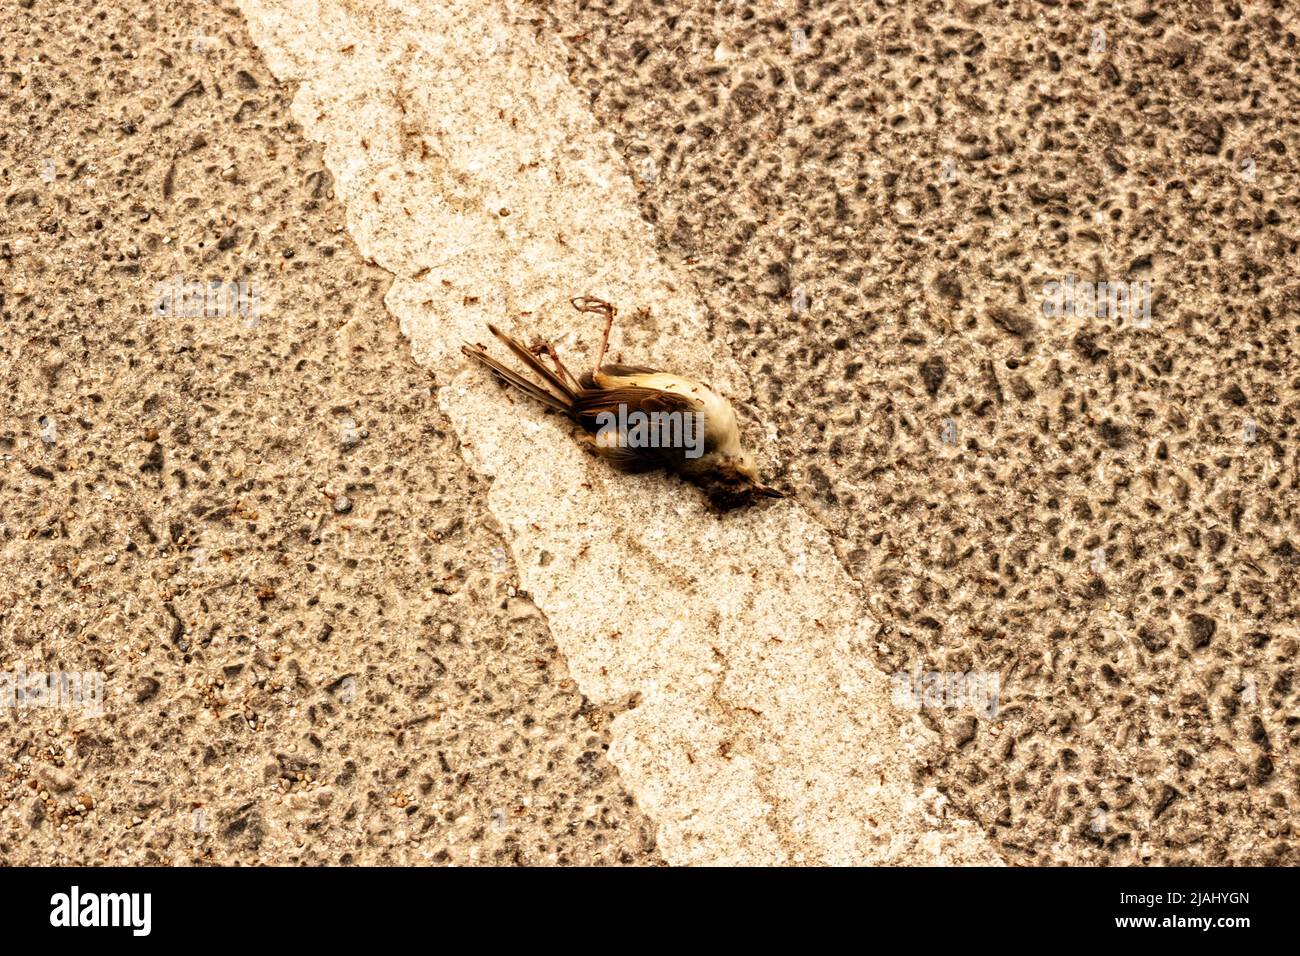 Kleiner Vogel starb, der von Ameisen gefressen wird. Saprophyten, die Leichen essern, reinigen die Umwelt von toten Tieren. Nordthailand Stockfoto